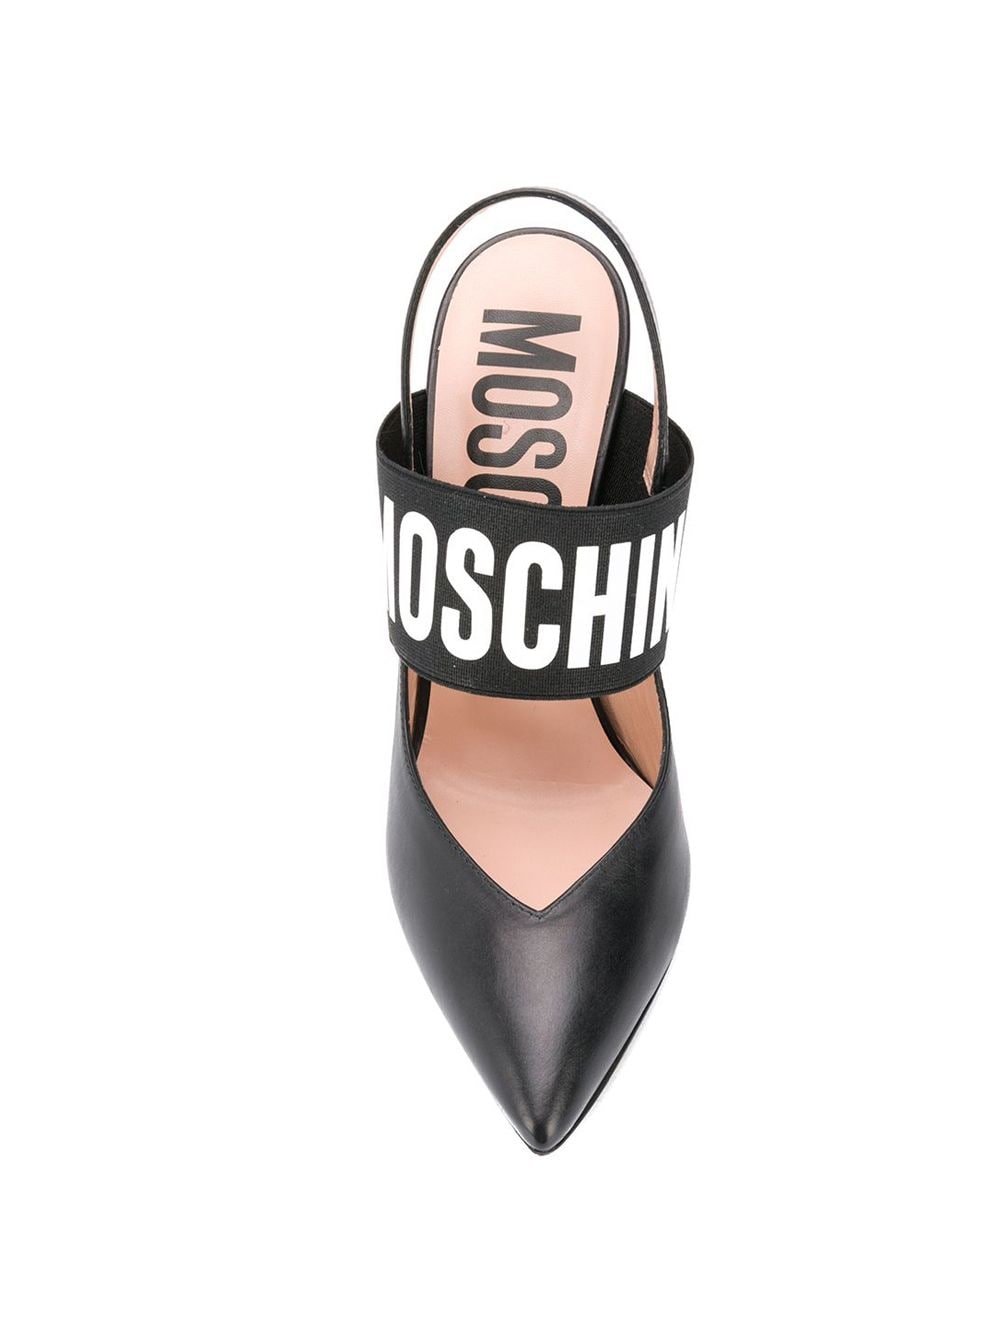 фото Moschino туфли-лодочки с ремешком на пятке и логотипом